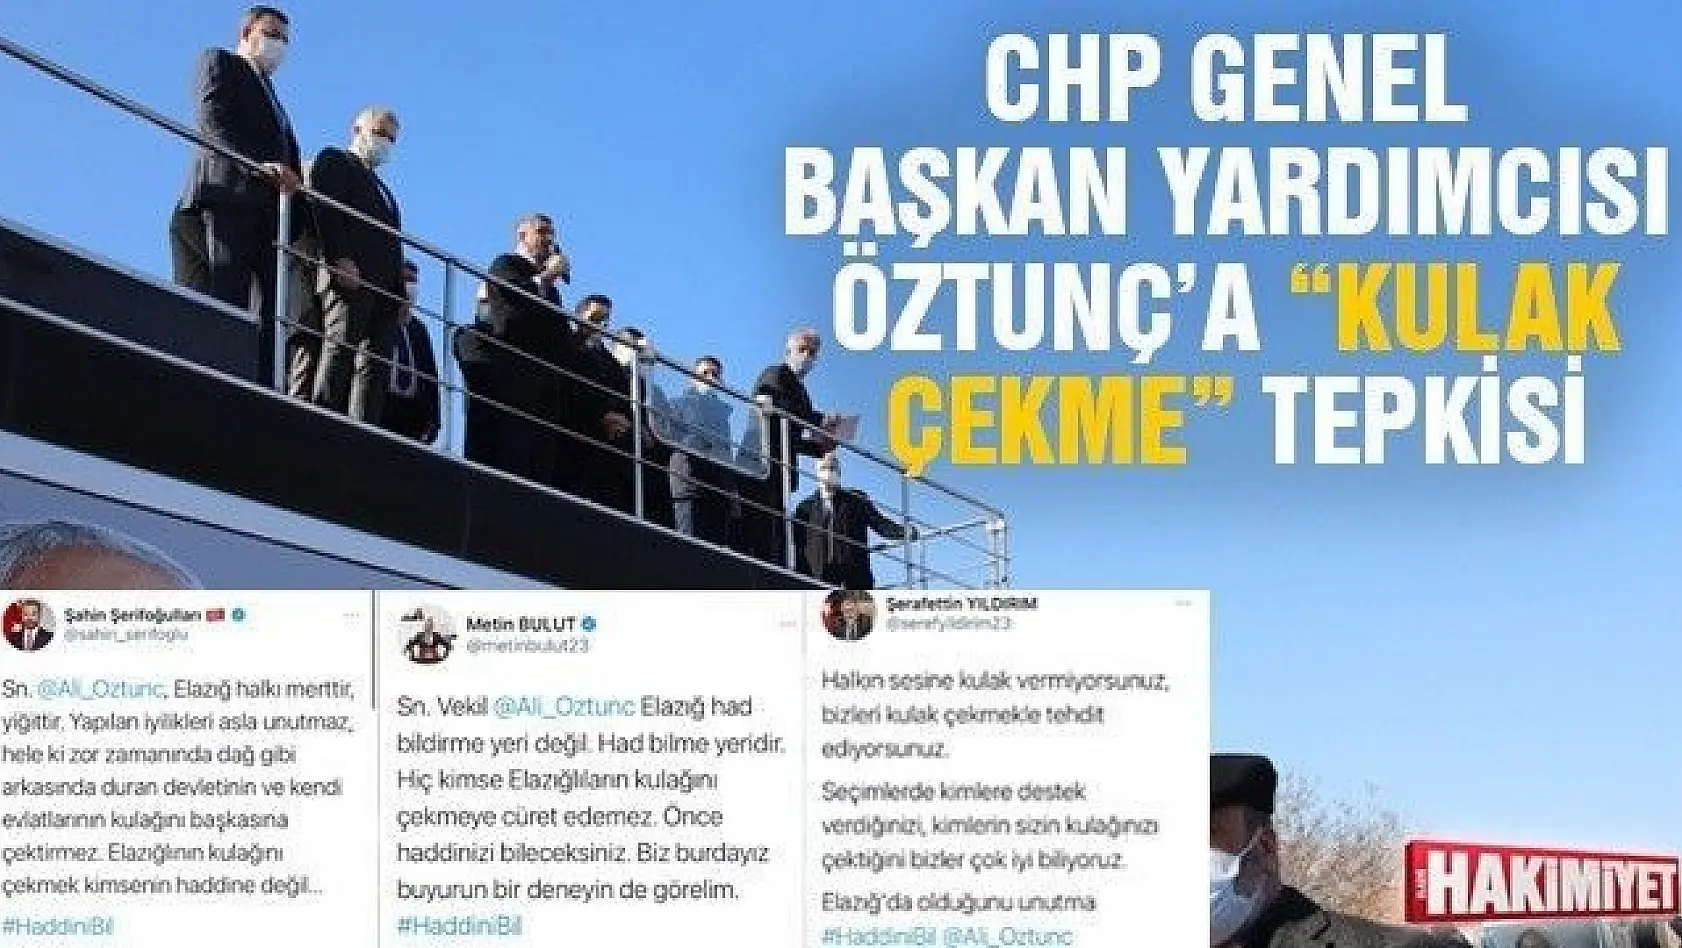 CHP Genel Başkan Yardımcısı Öztunç'a 'kulak çekme' tepkisi